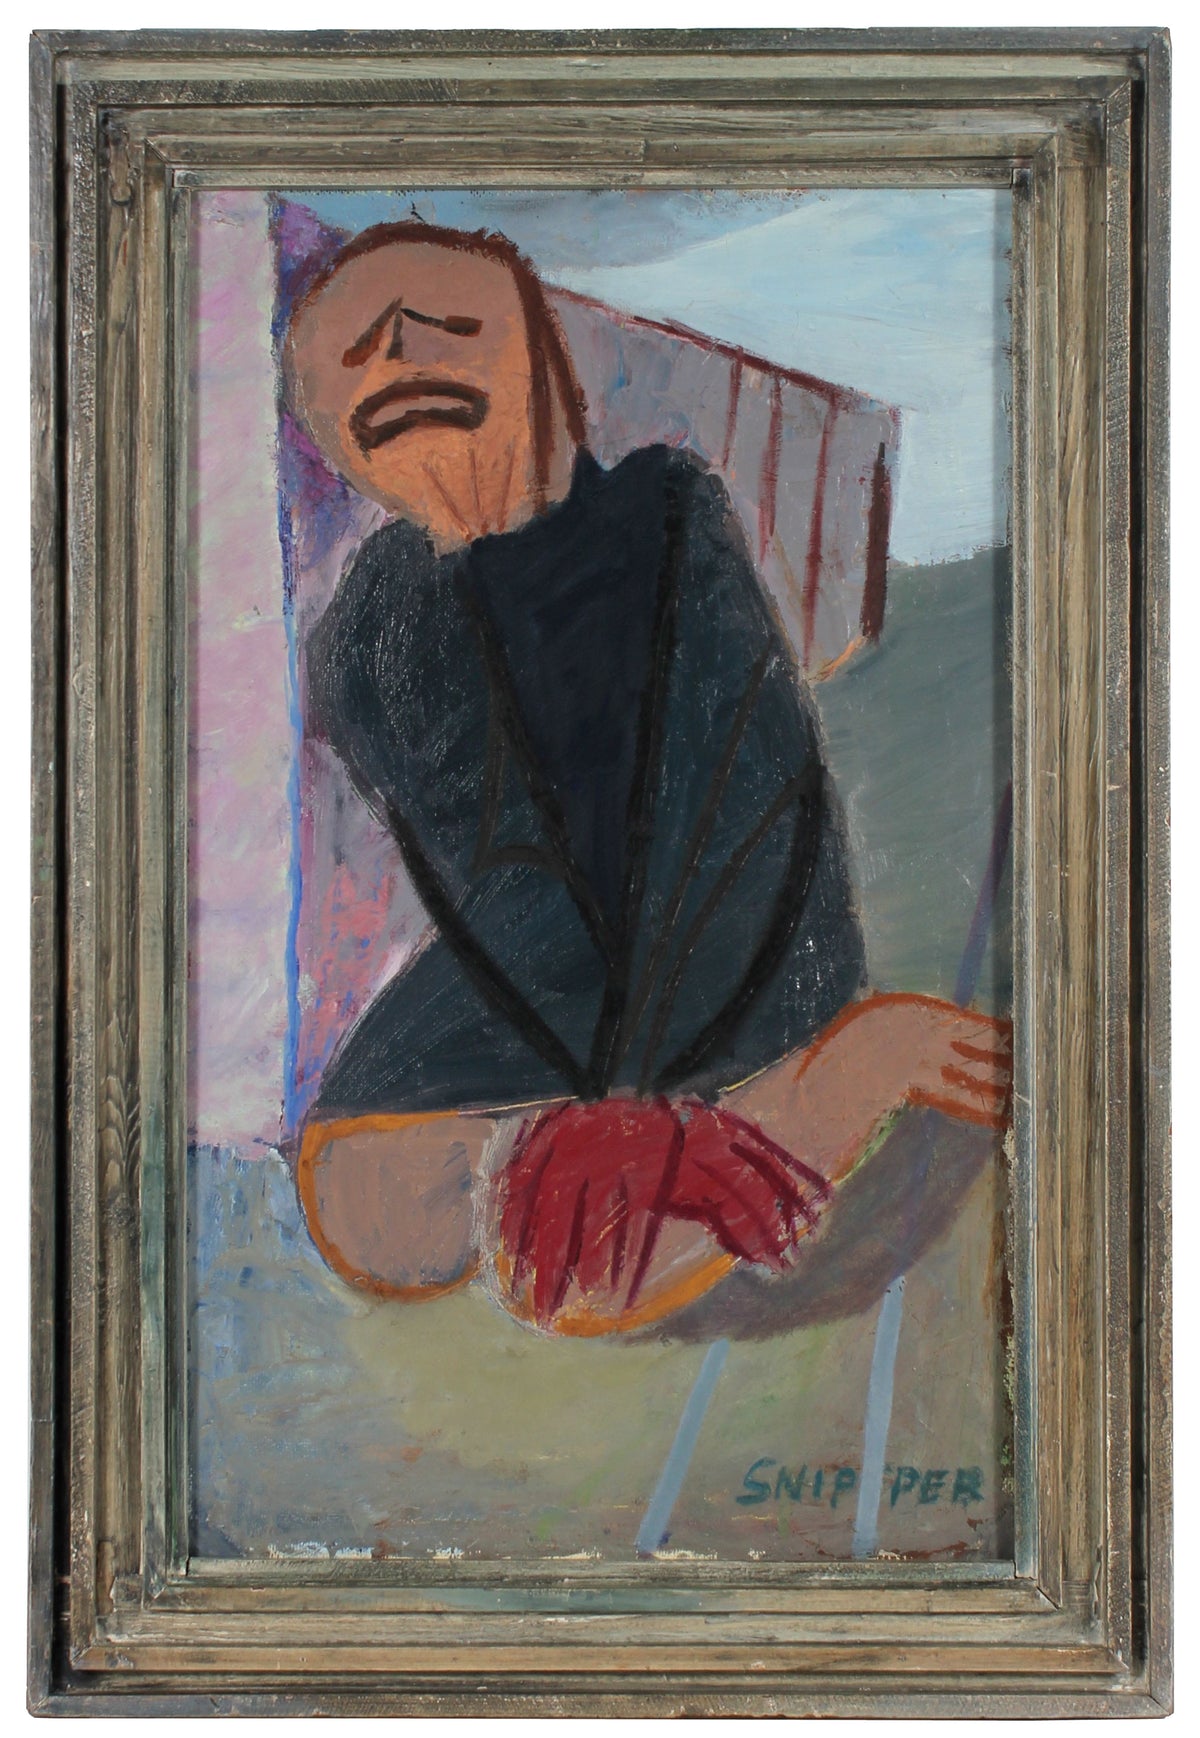 Kneeling Expressionist Figure&lt;br&gt;1940-50s Oil&lt;br&gt;&lt;br&gt;#59307